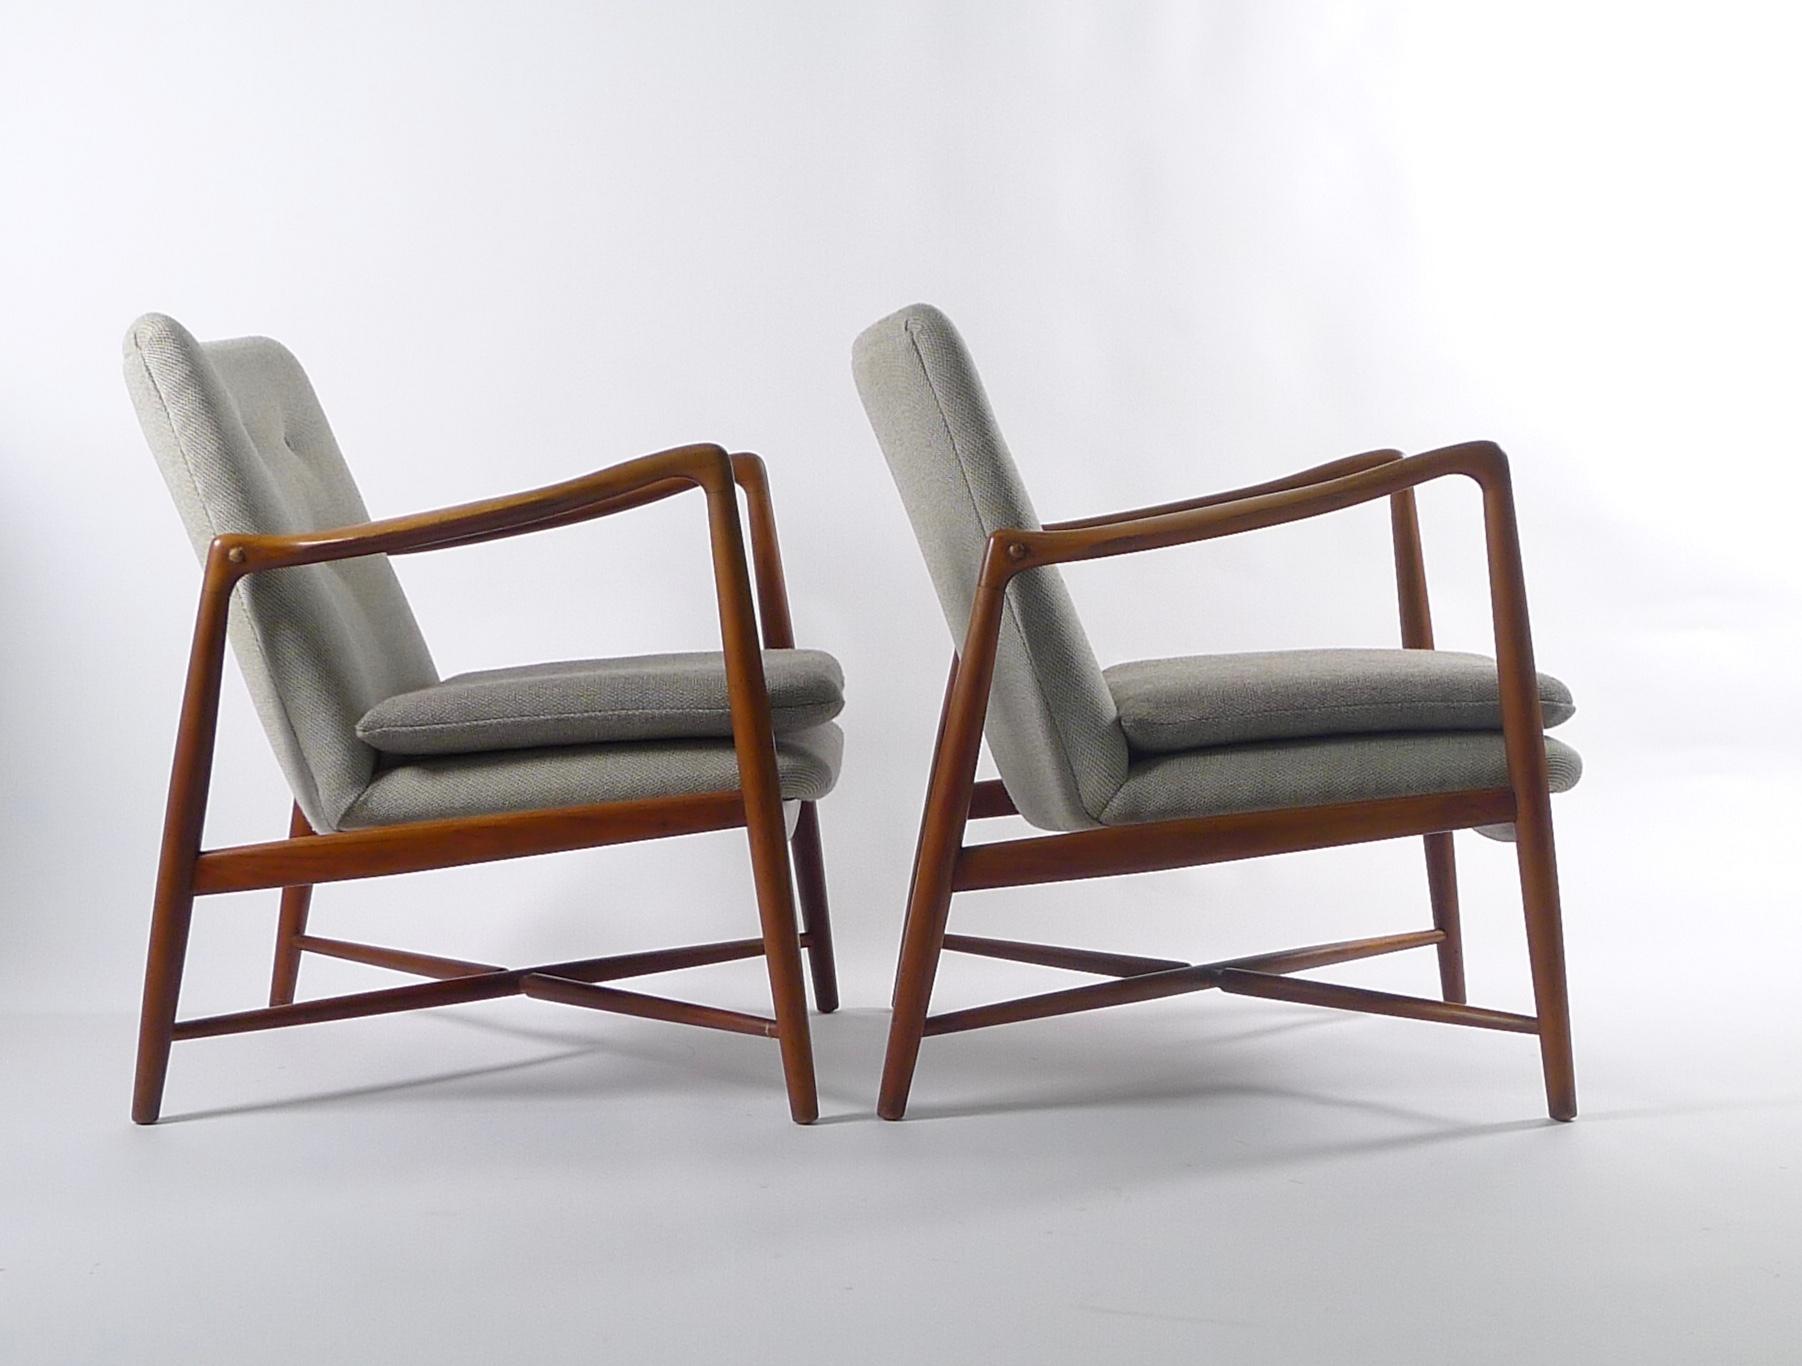 Woodwork Finn Juhl, Pair of Teak Fireplace Chairs, Model BO59, Bovirke, Denmark, 1946